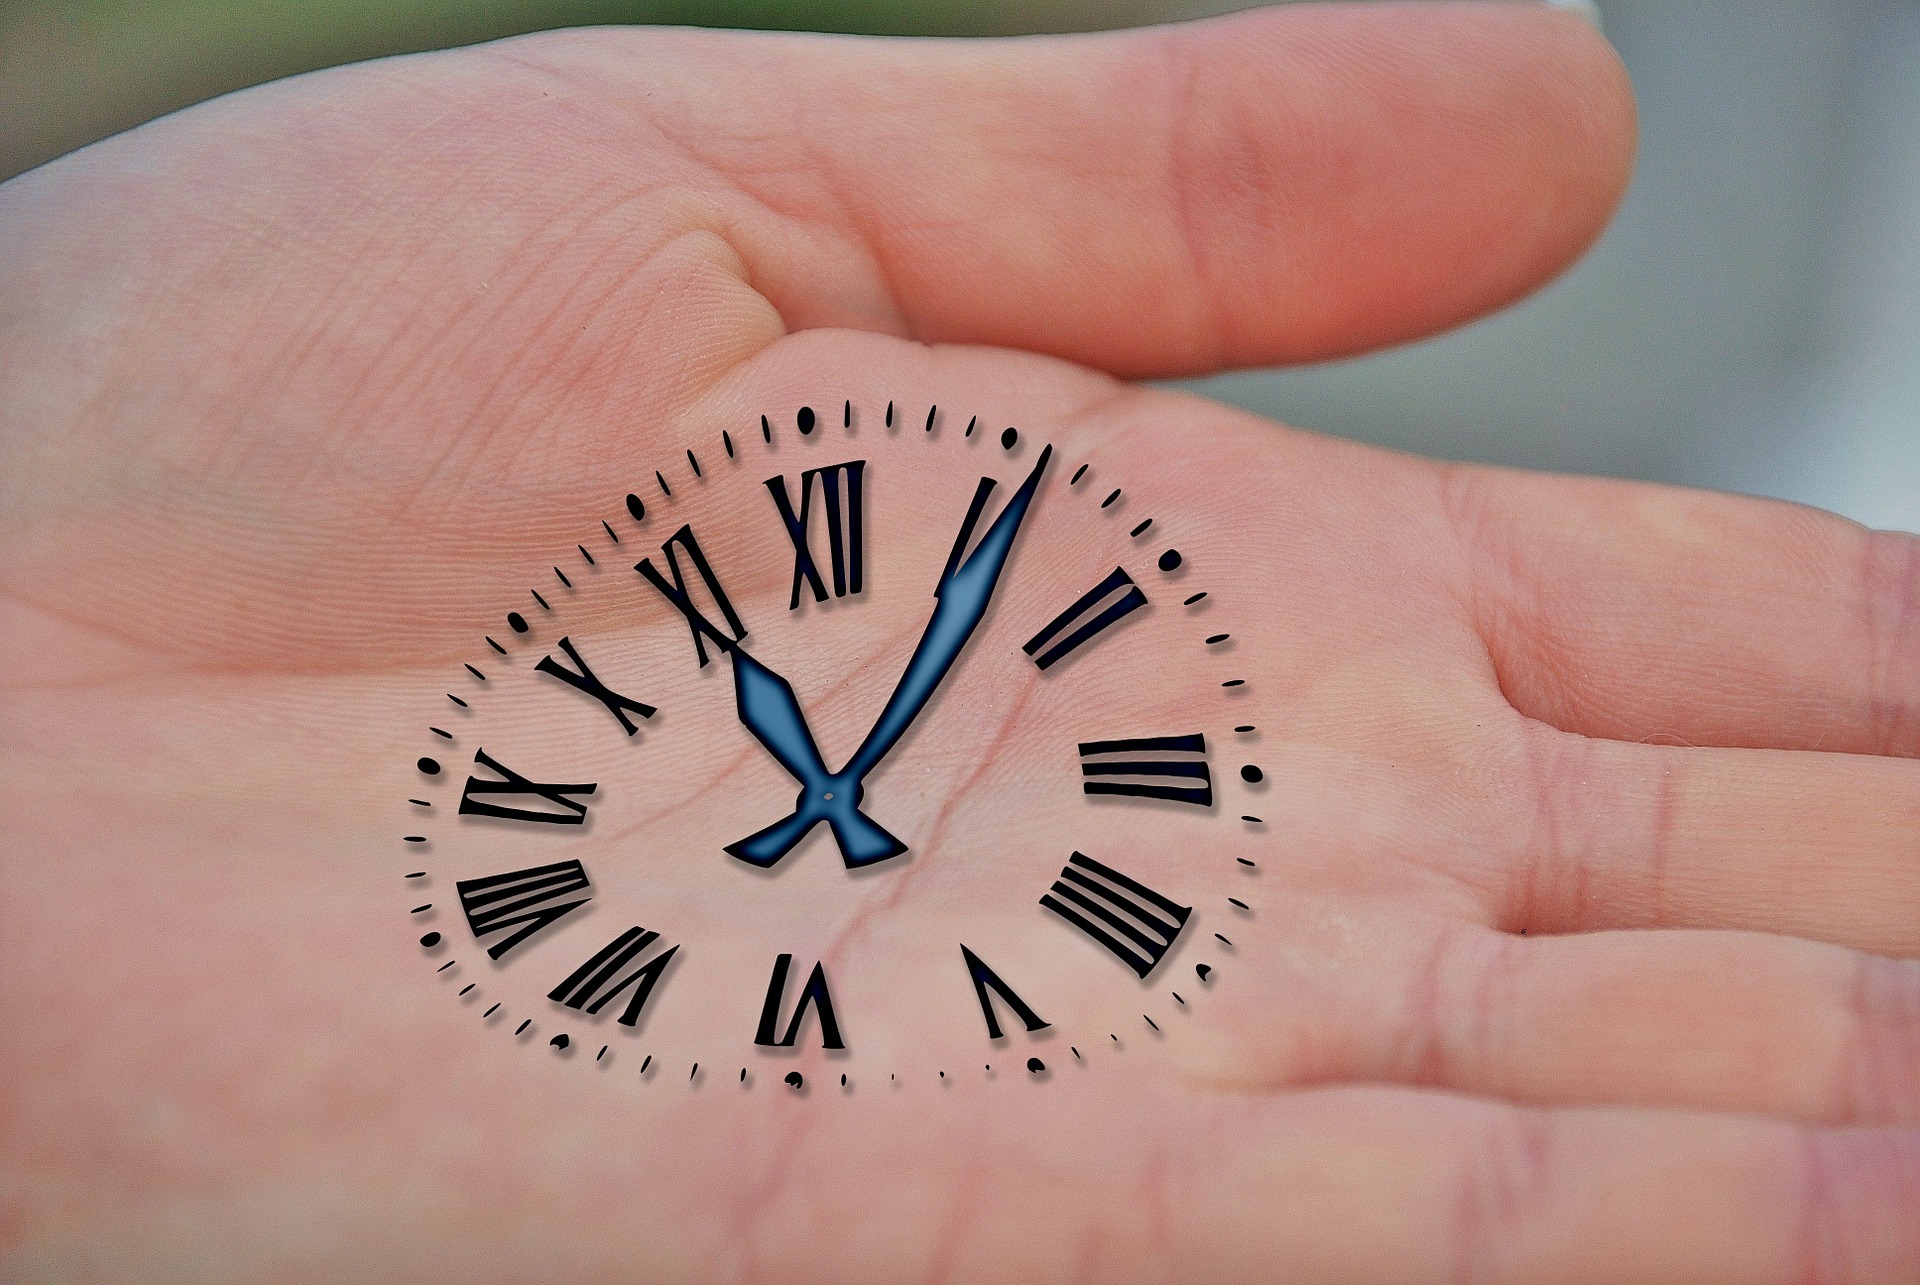 рука, часы, ладонь, таймменеджмент, Владимир Якуба, личная эффективность ошибки, тайм-менеджмент, хронометраж, на что мы тратим время, время впустую, зря тратим время, как подсчитать время, что тратит наше время, на что мы тратим свое время, бесполезное время, планирование, как планировать, как правильно распределить время, Личная эффективность, самодисциплина